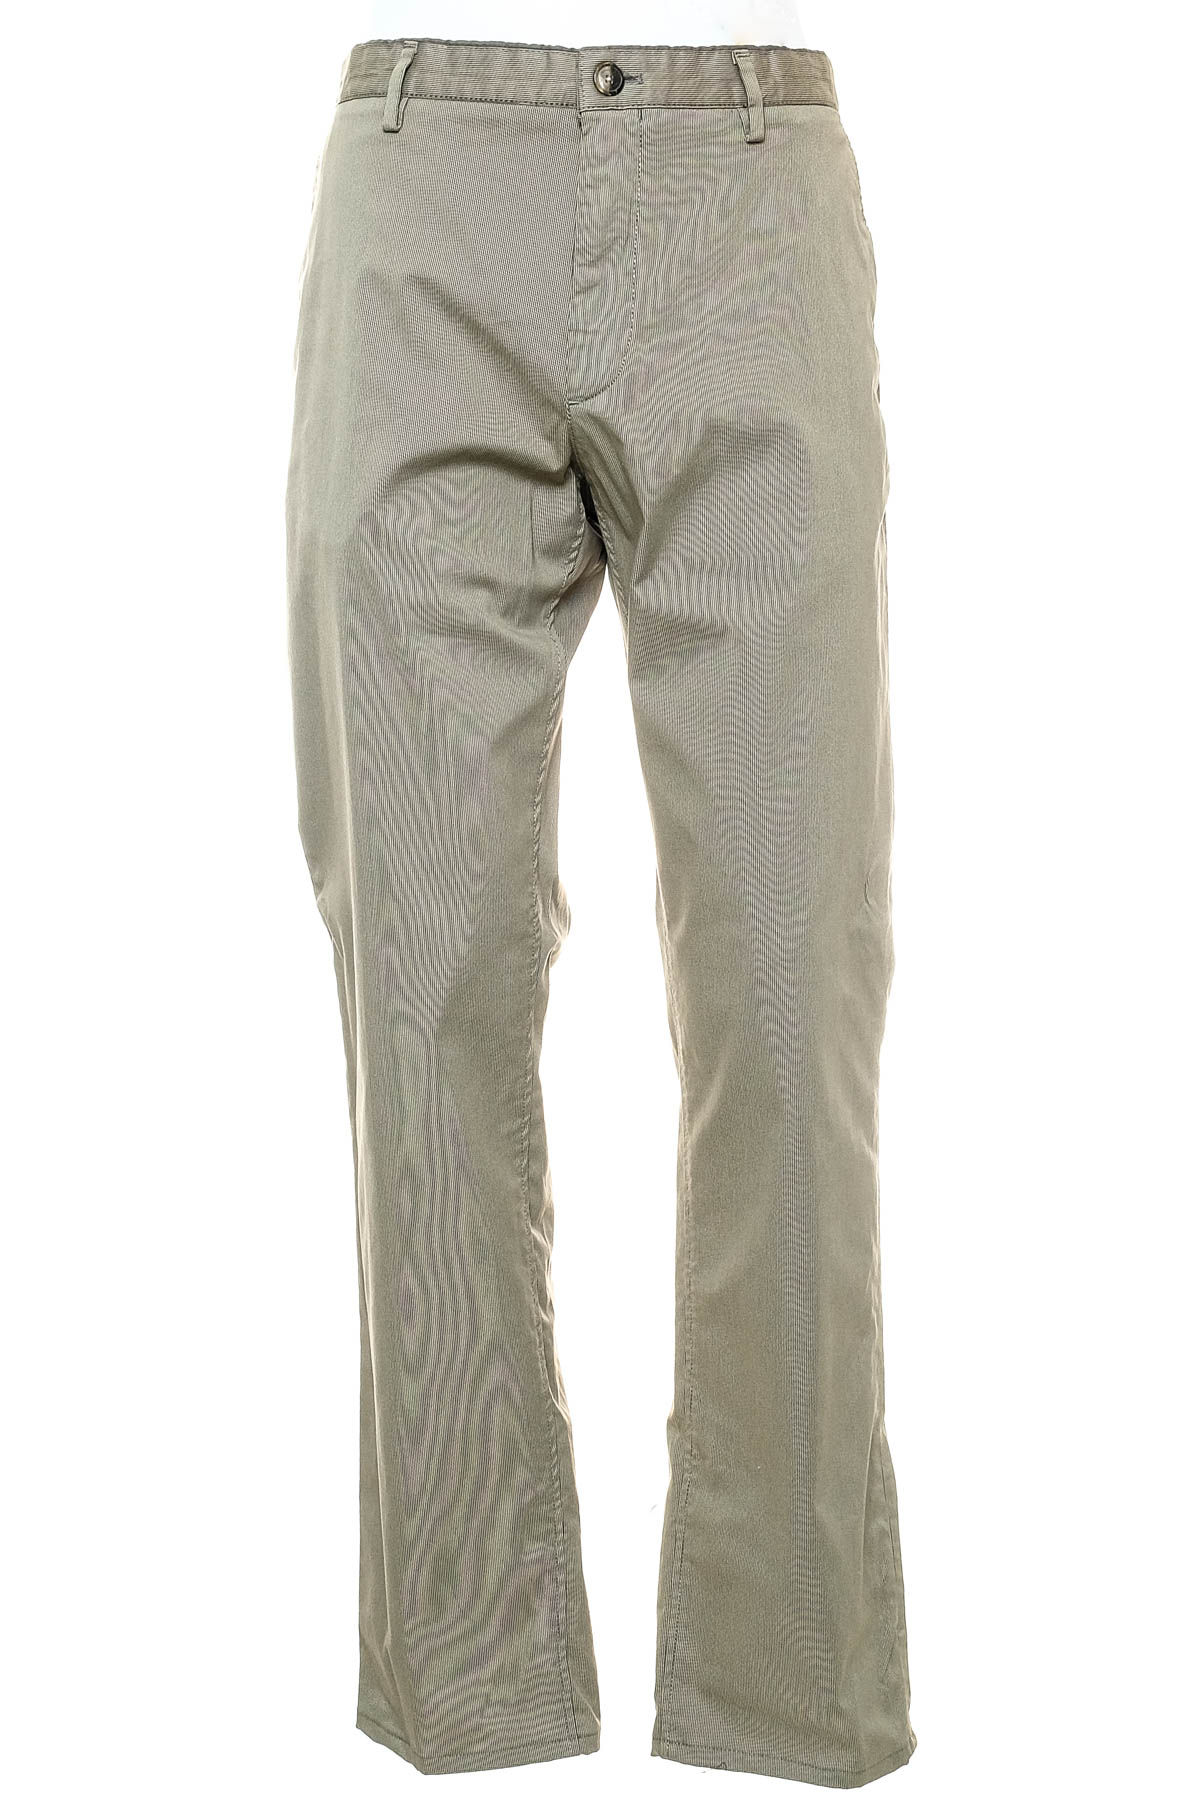 Pantalon pentru bărbați - Massimo Dutti - 0